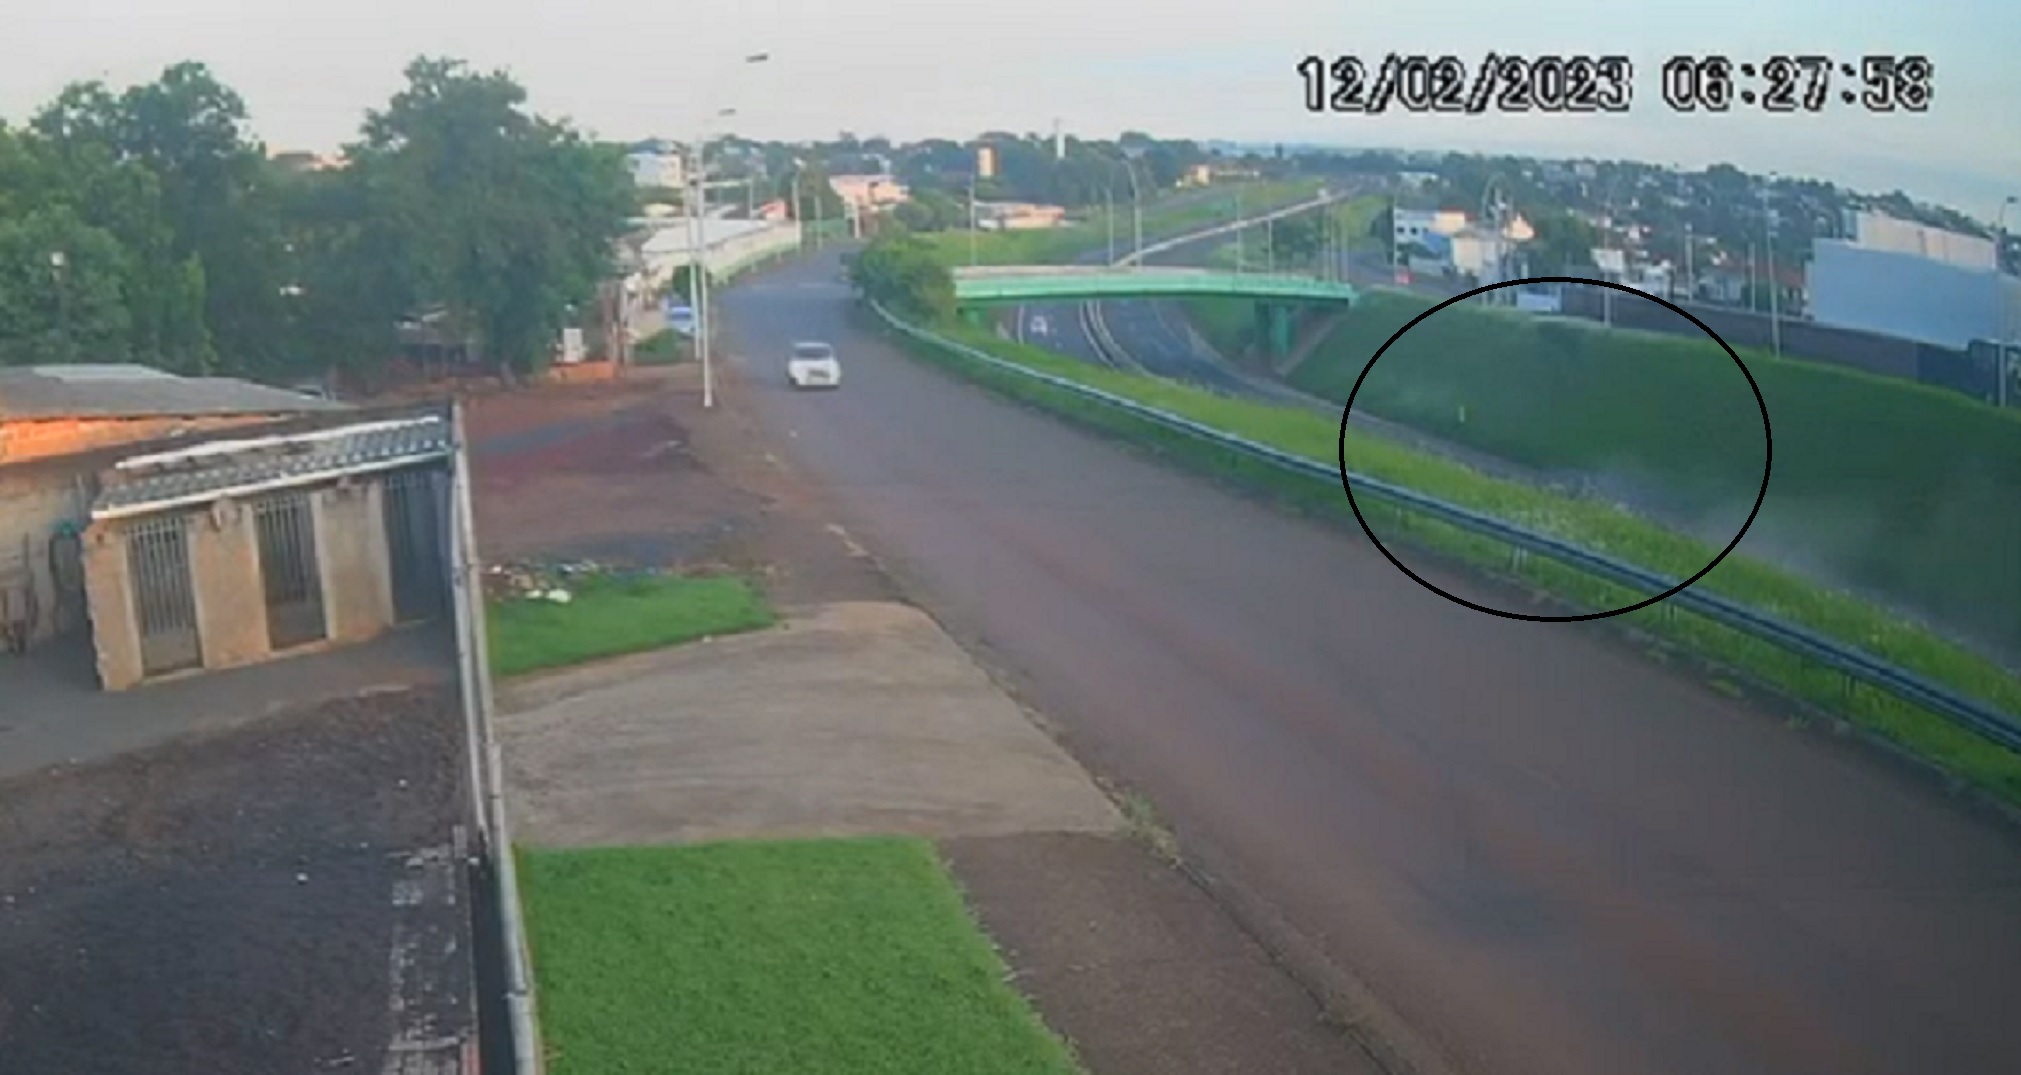 Câmeras flagram colisão frontal na BR-277 em Cascavel  CGN - O maior  portal de notícias de Cascavel e do Paraná